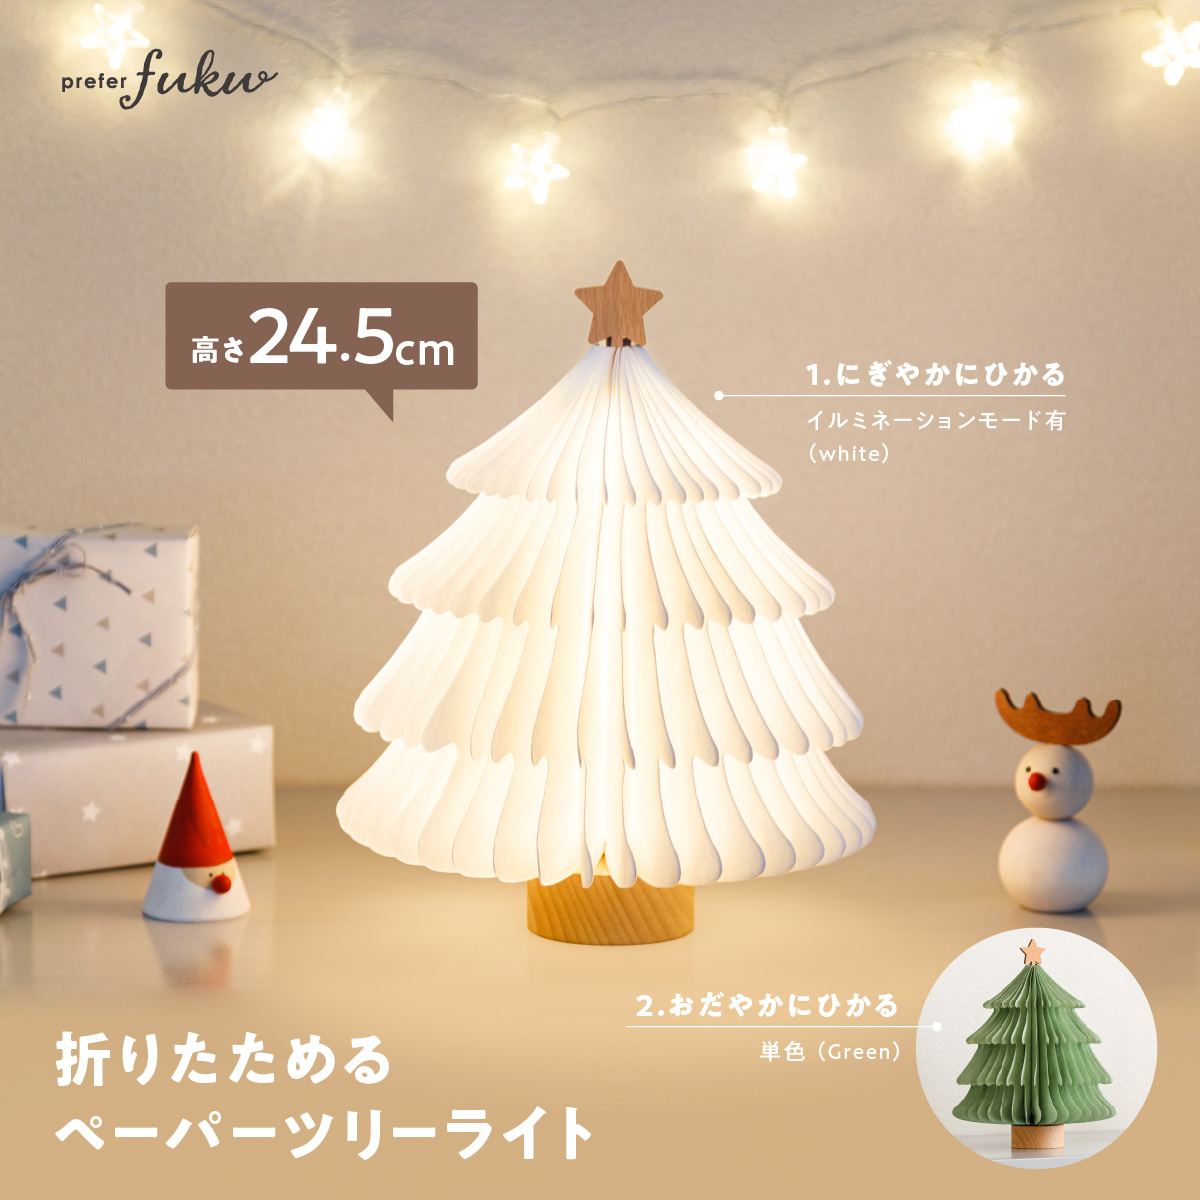 クリスマスツリー おしゃれ 卓上 ライト LED コンパクト 収納 飾り 折りたたみ式 prefer fuku -tomolulu- 選べる2色